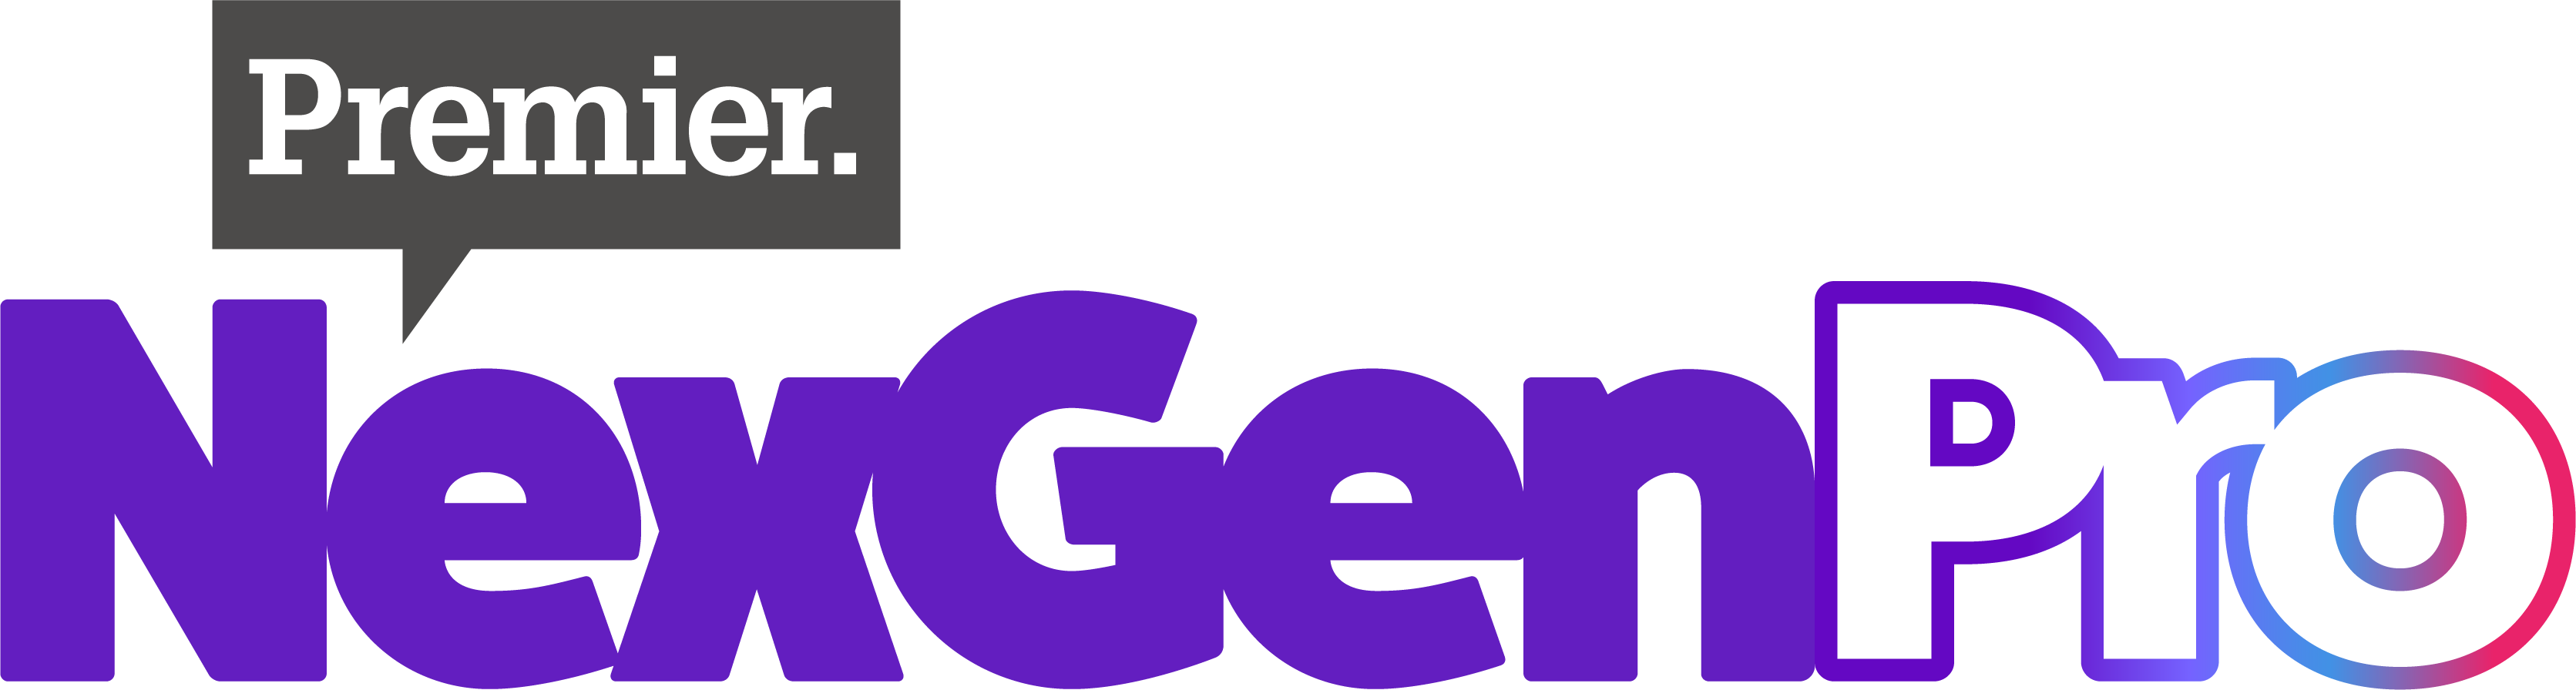 Premier NexGen Logo